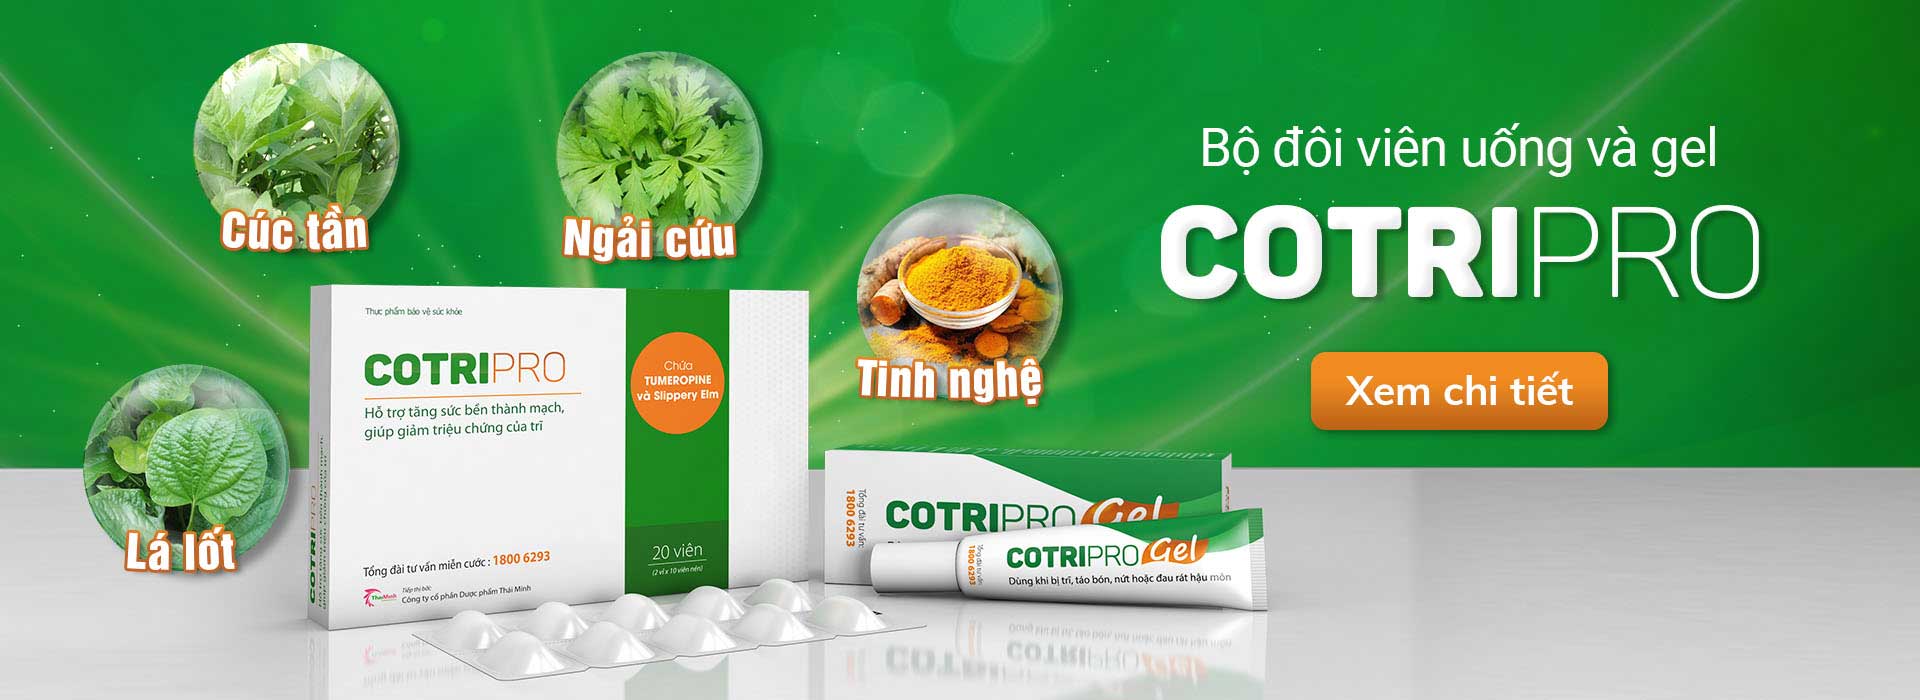 Cotripro - sản phẩm hỗ trợ điều trị bệnh trĩ 1